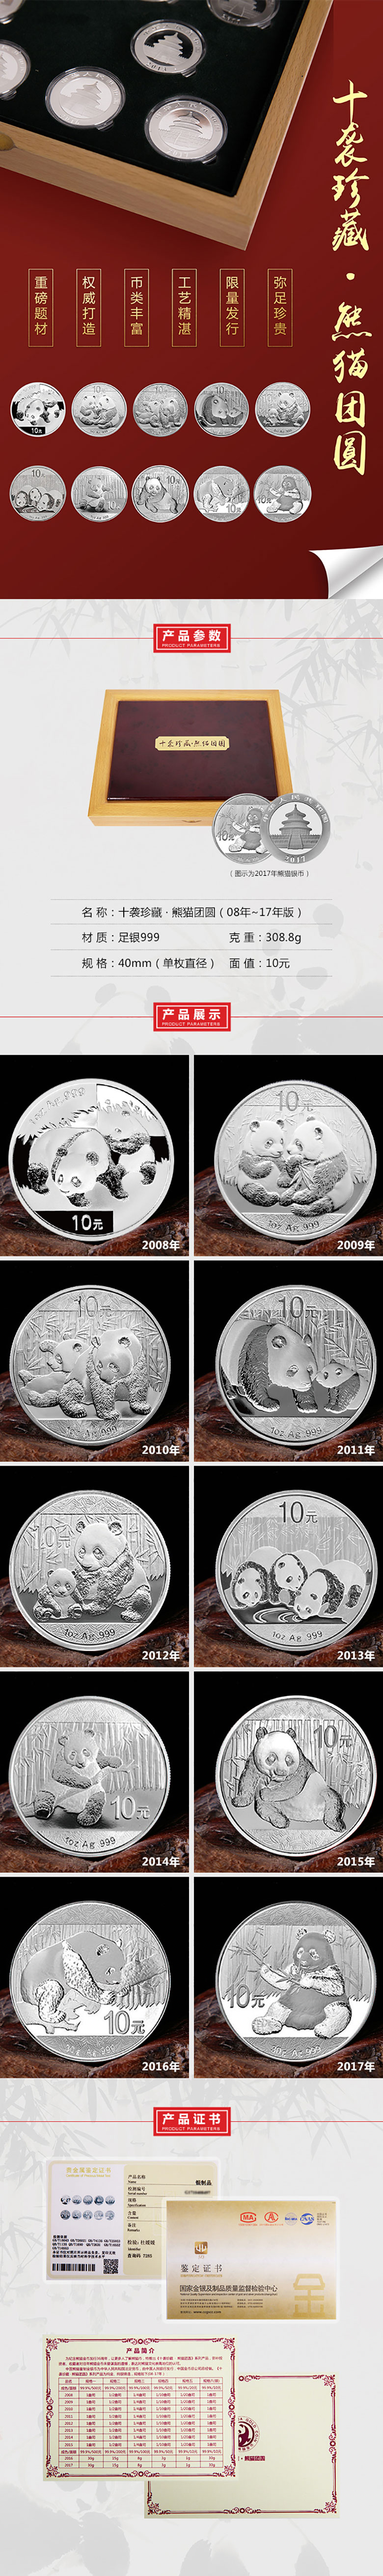 熊猫银币.jpg